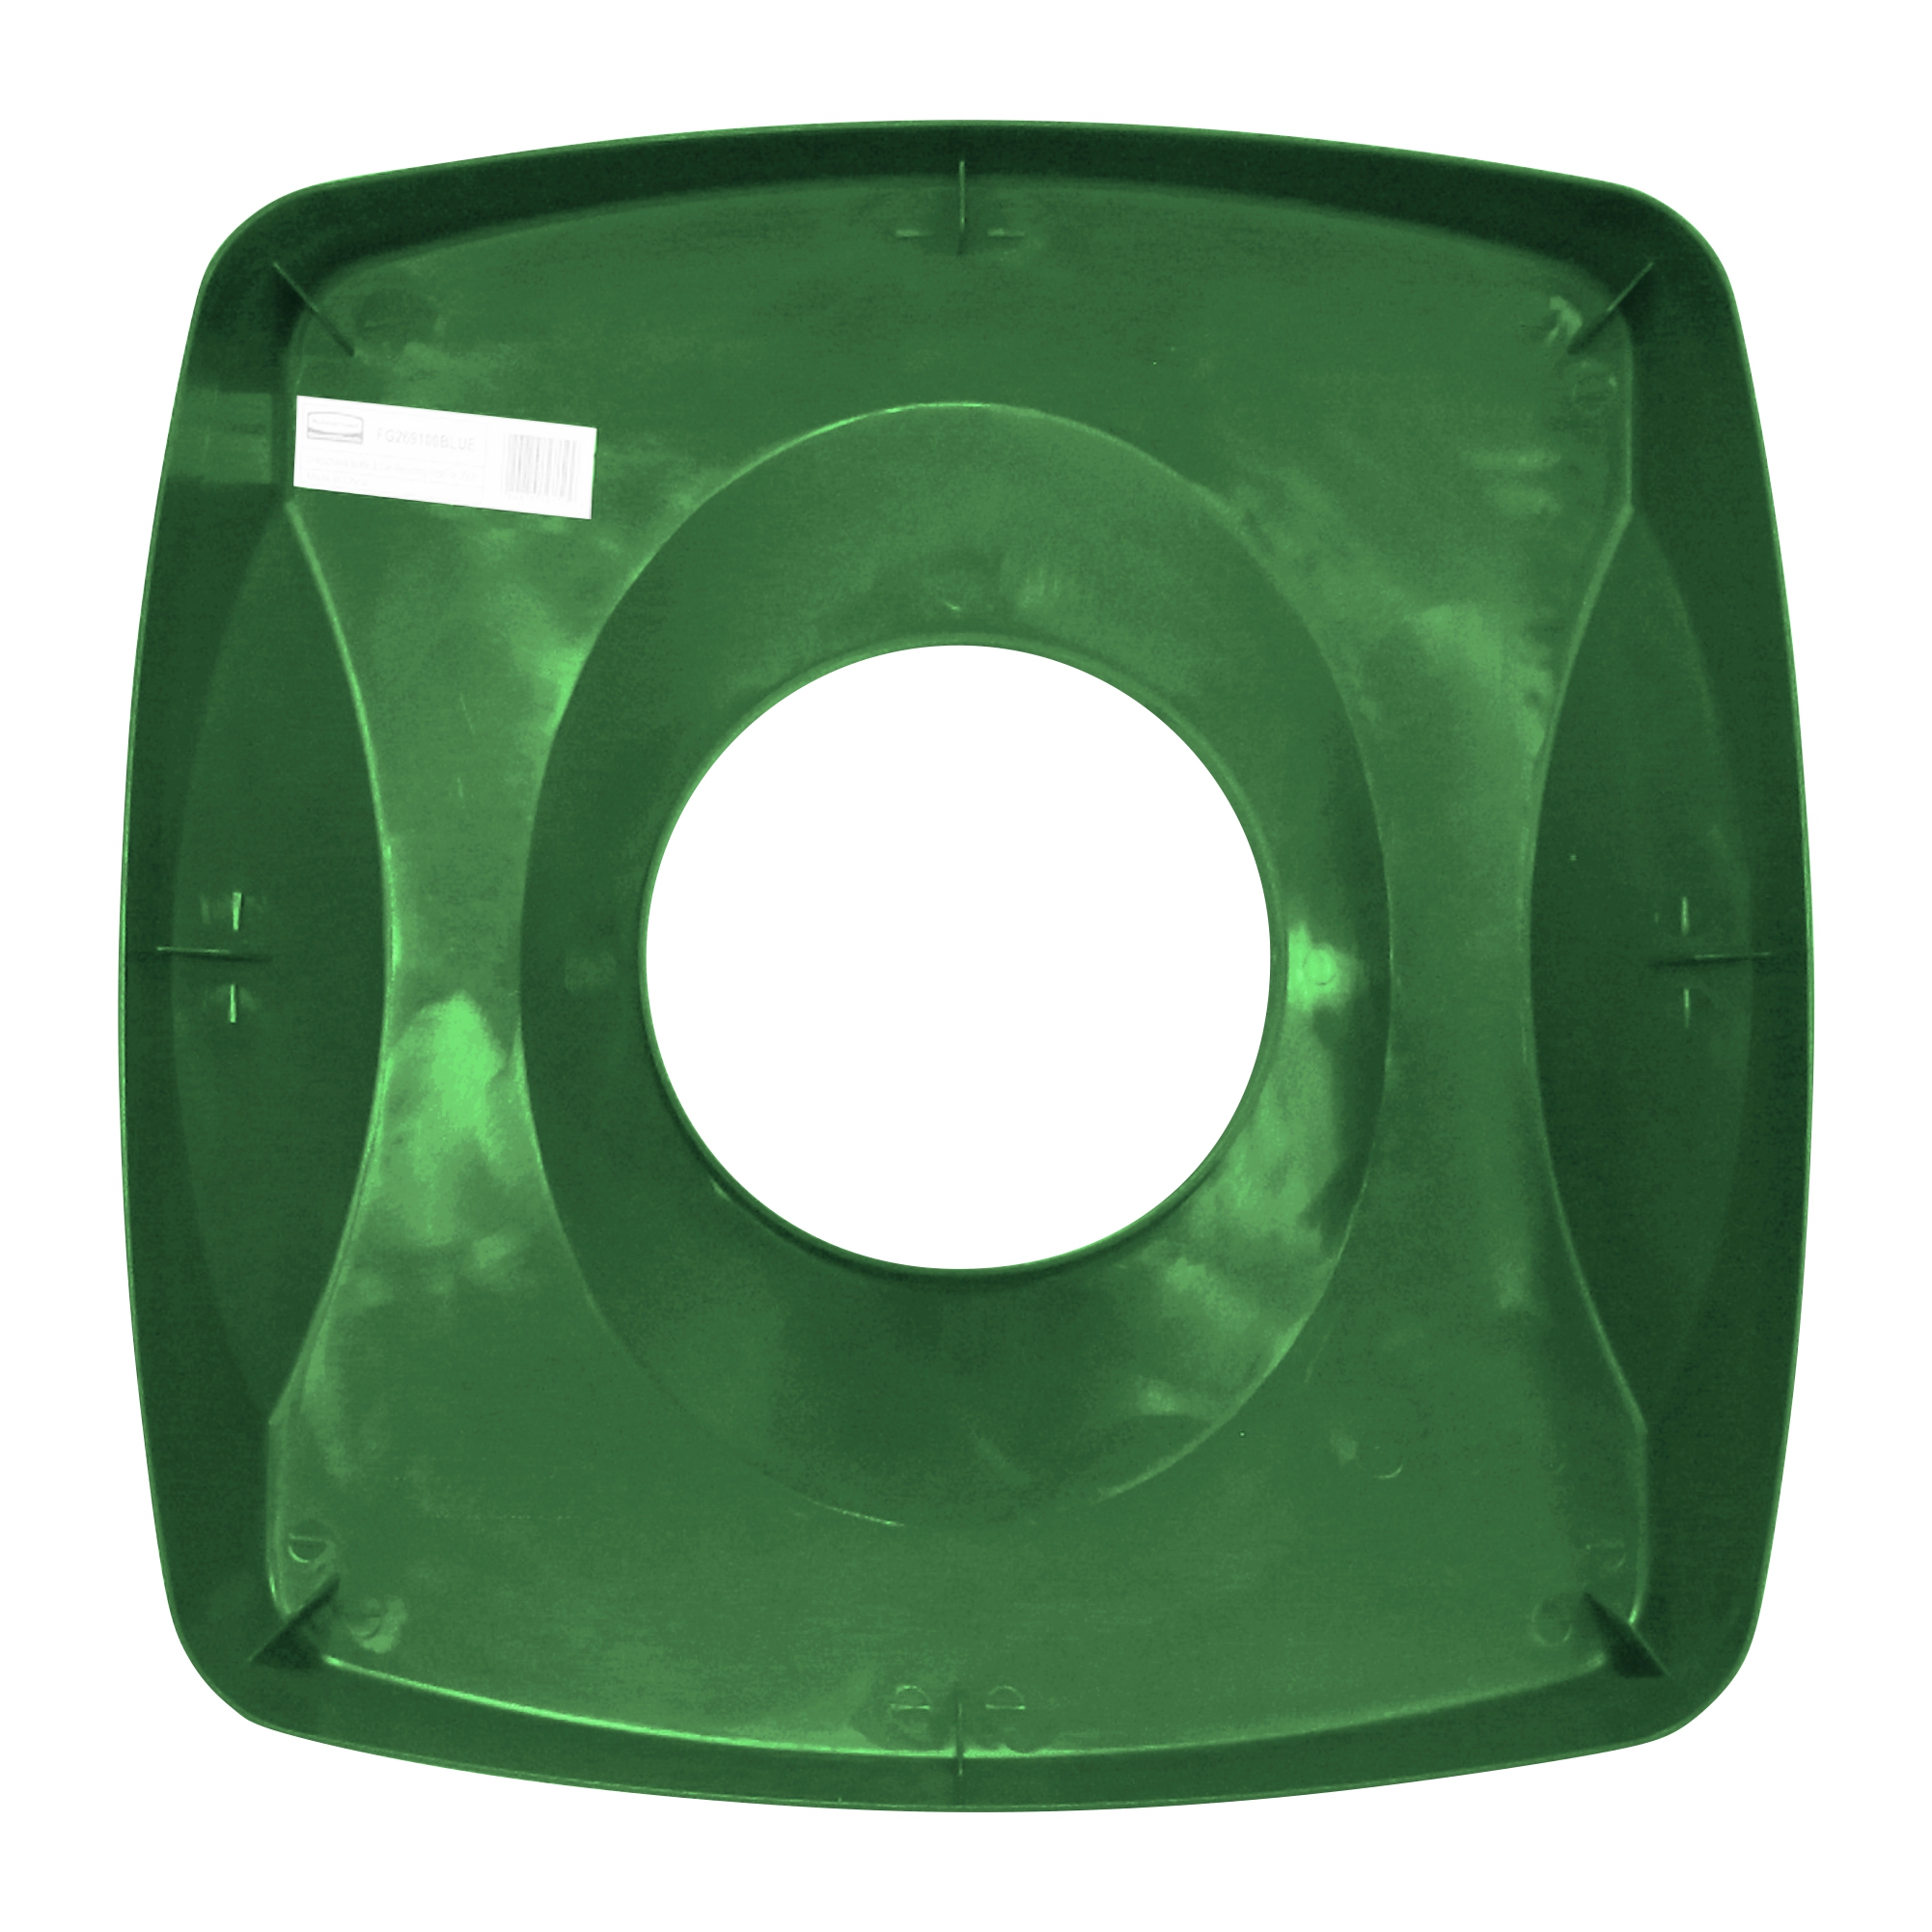 Rubbermaid FG269100GRN tapa untouchable color verde para reciclaje de papel, aplican contenedores FG356907 y FG356988